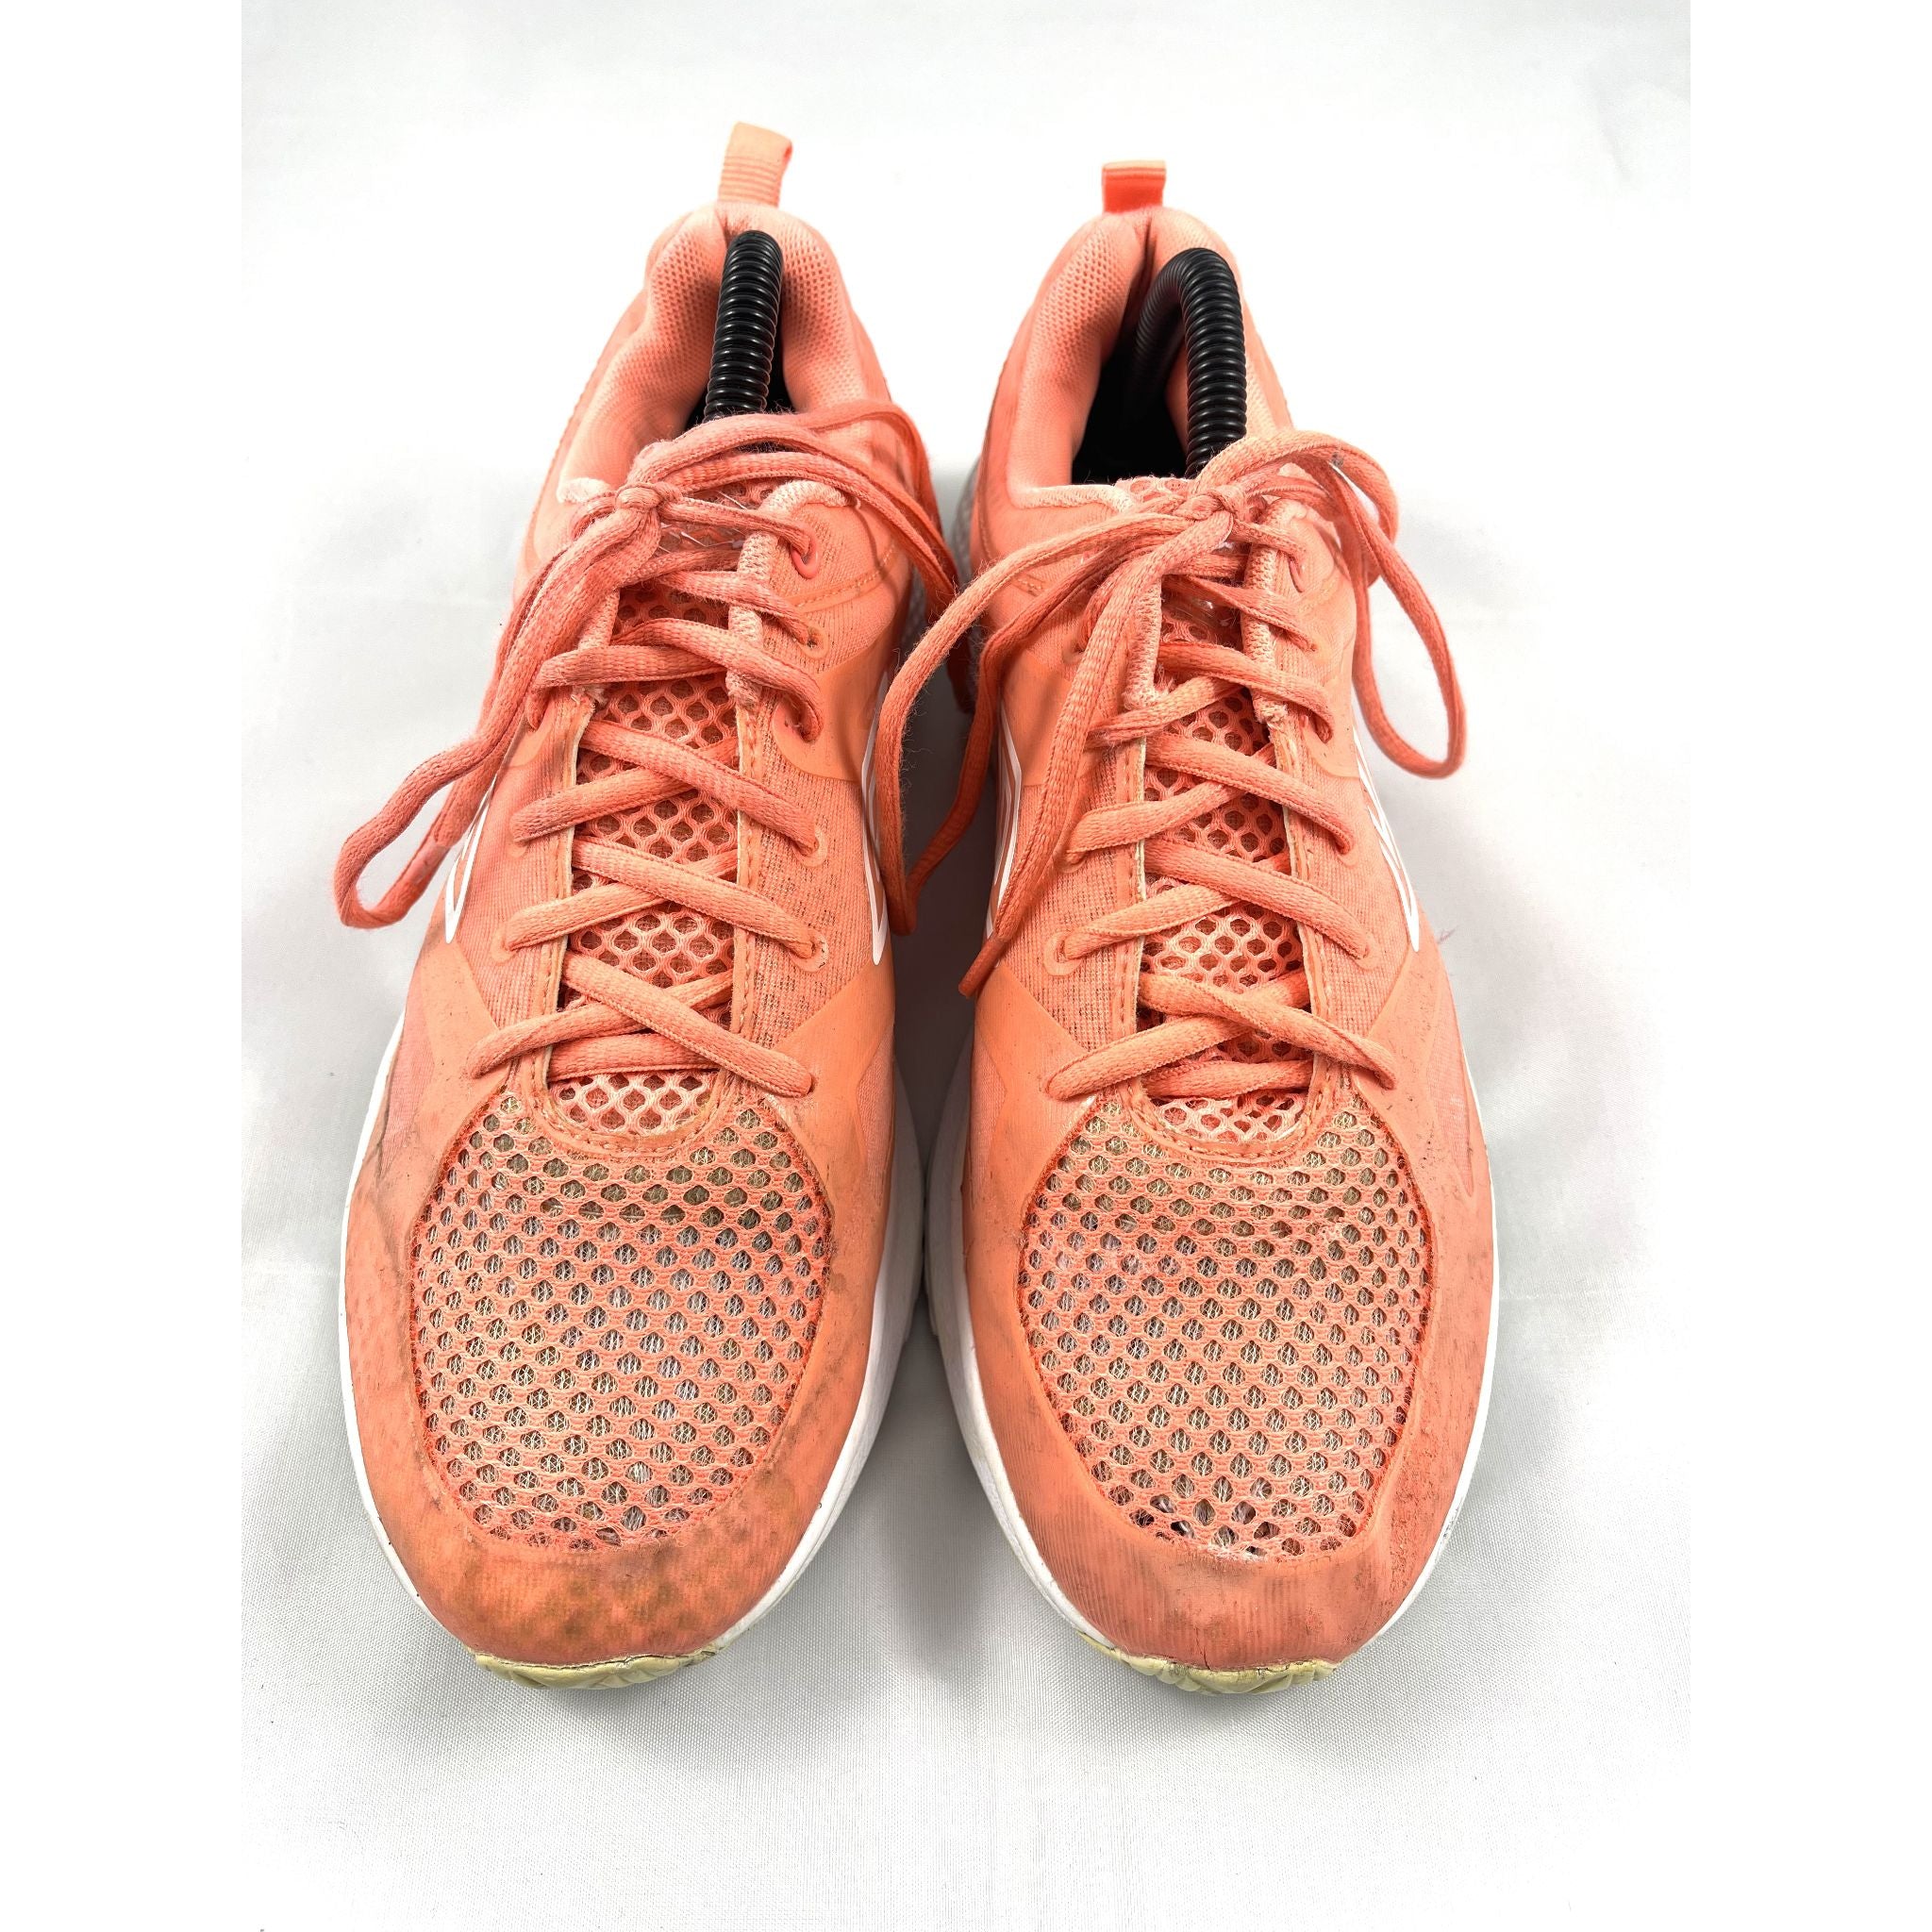 أحذية رياضية للجري من أمبرو